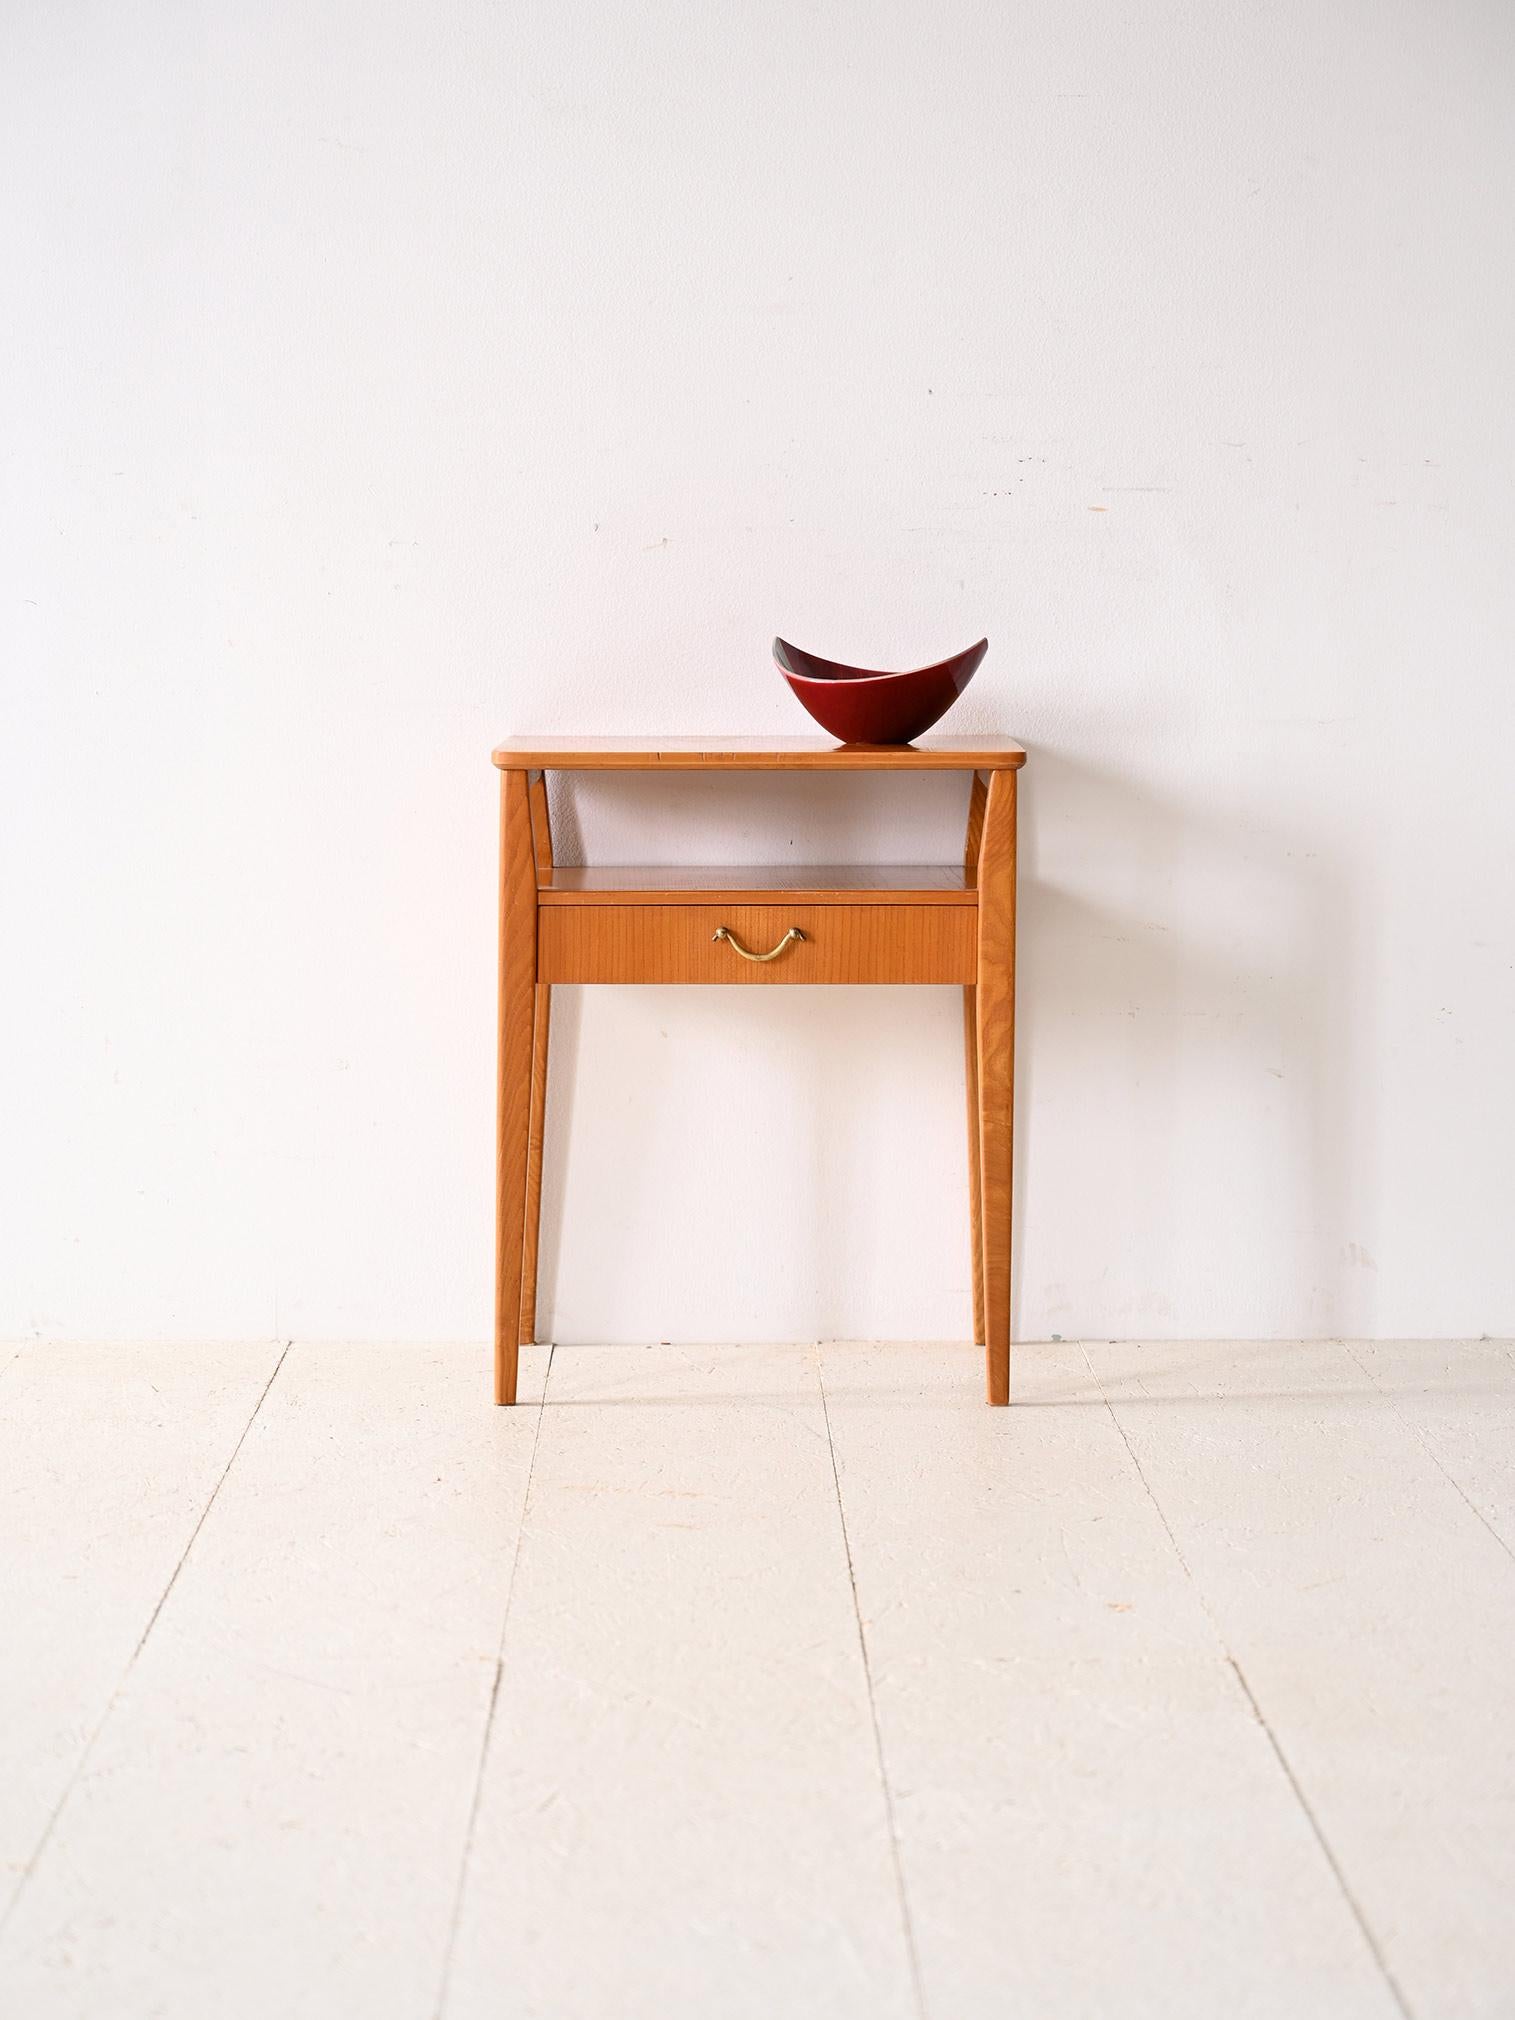 Table de chevet scandinave en teck et bouleau.

Cette table basse des années 1960 rappelle le style et le goût du design nordique du milieu du siècle dernier. Composée d'une double étagère et équipée d'un tiroir avec poignée en métal doré, elle est